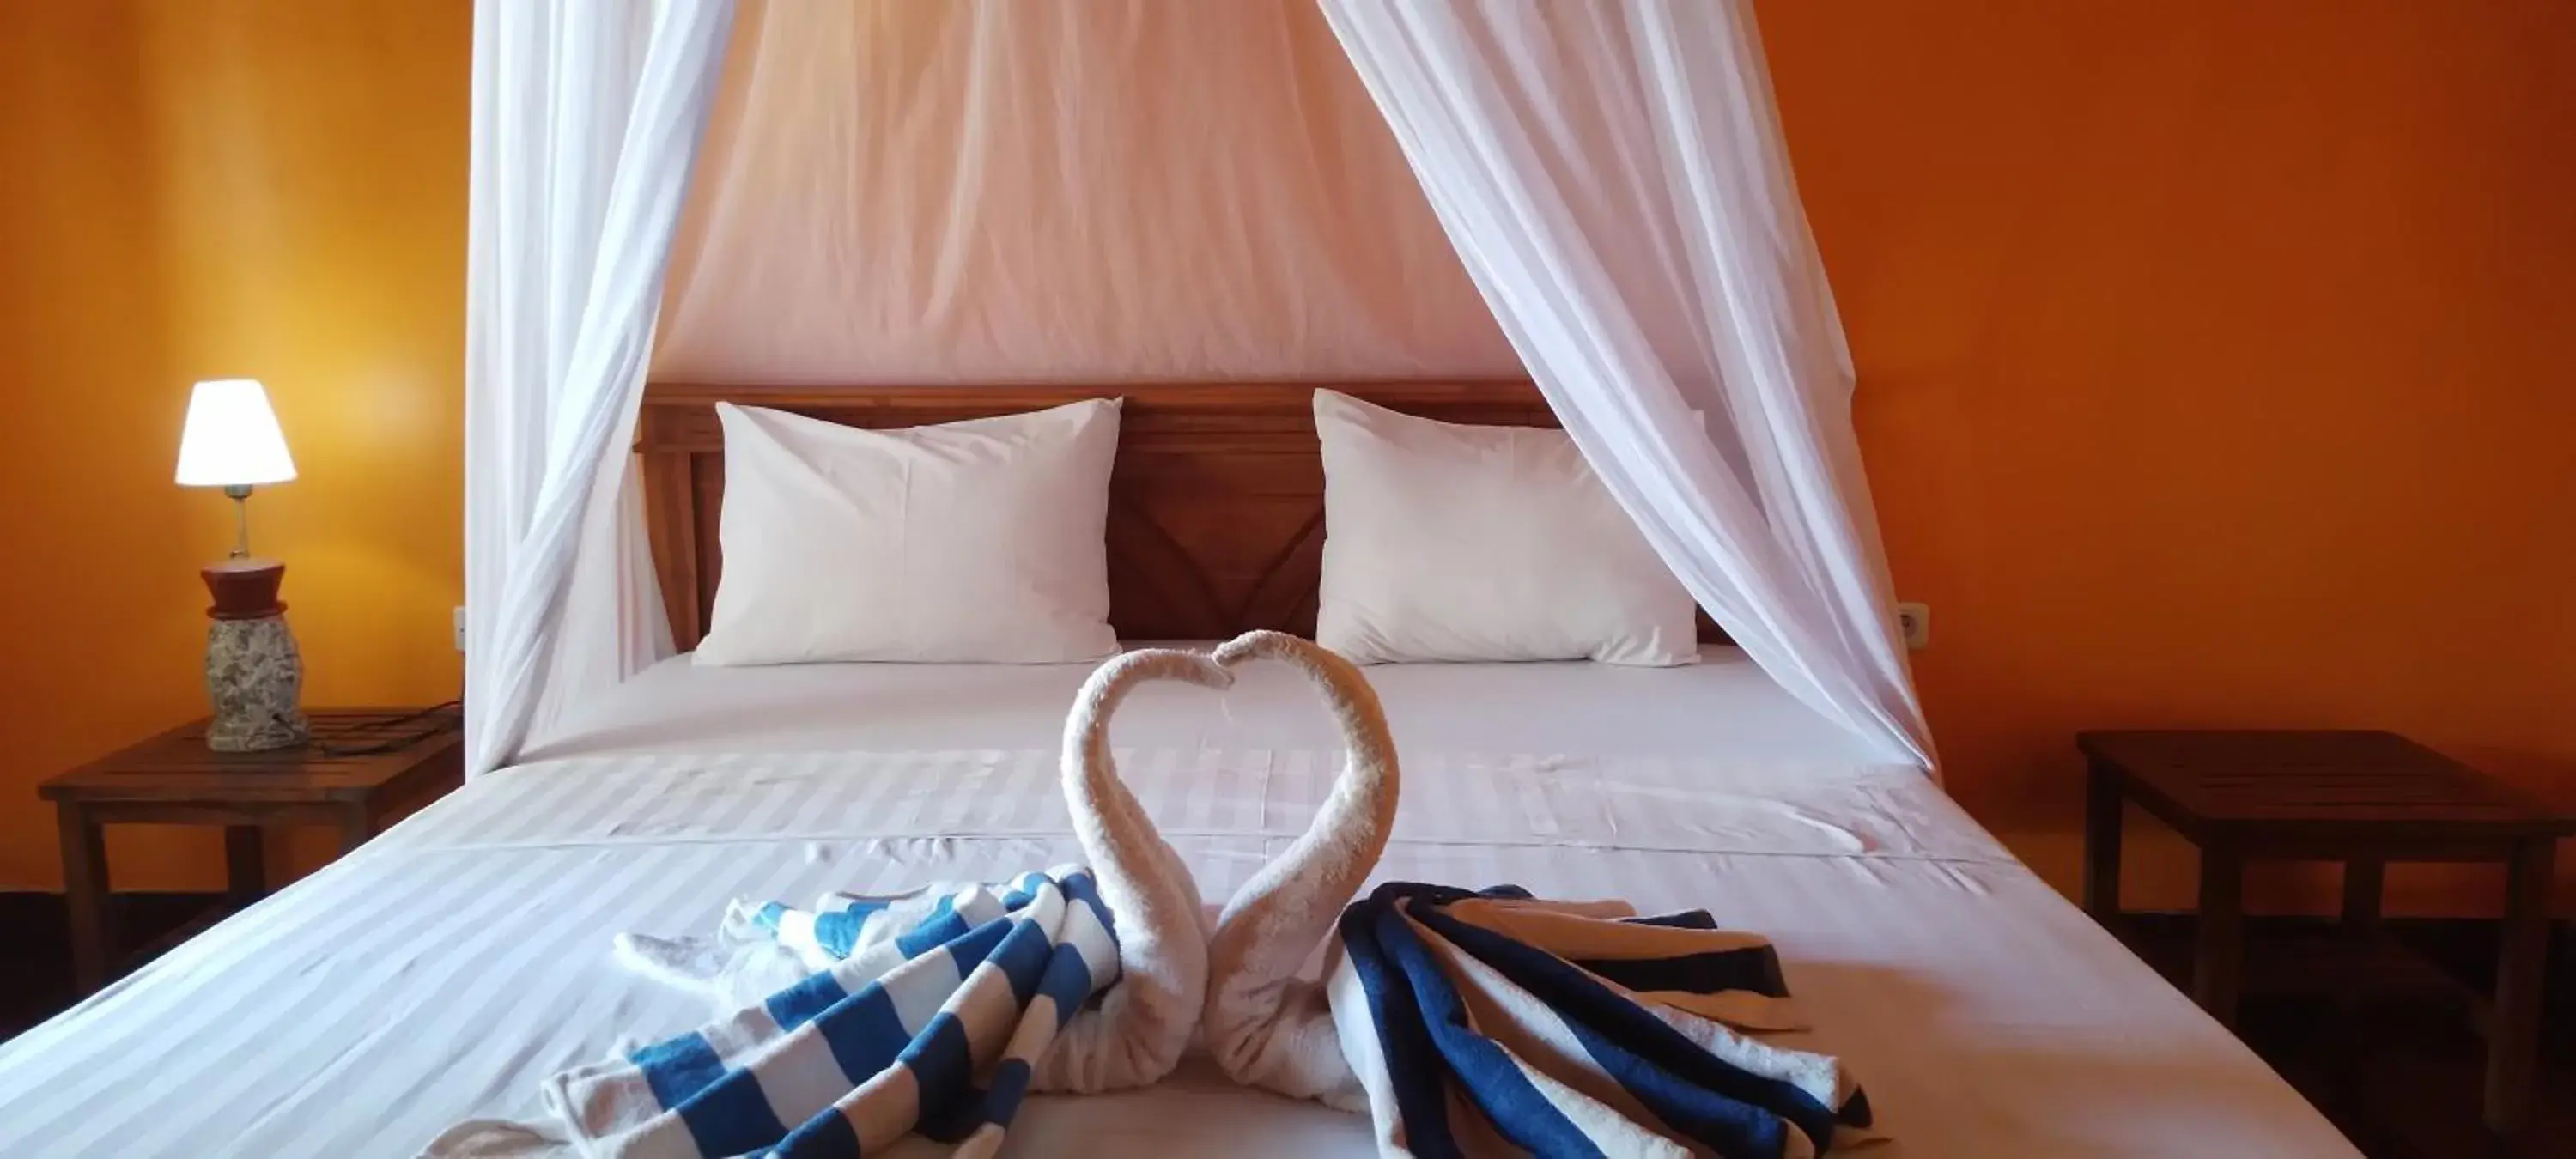 Bedroom, Bed in Pandan Bungalow